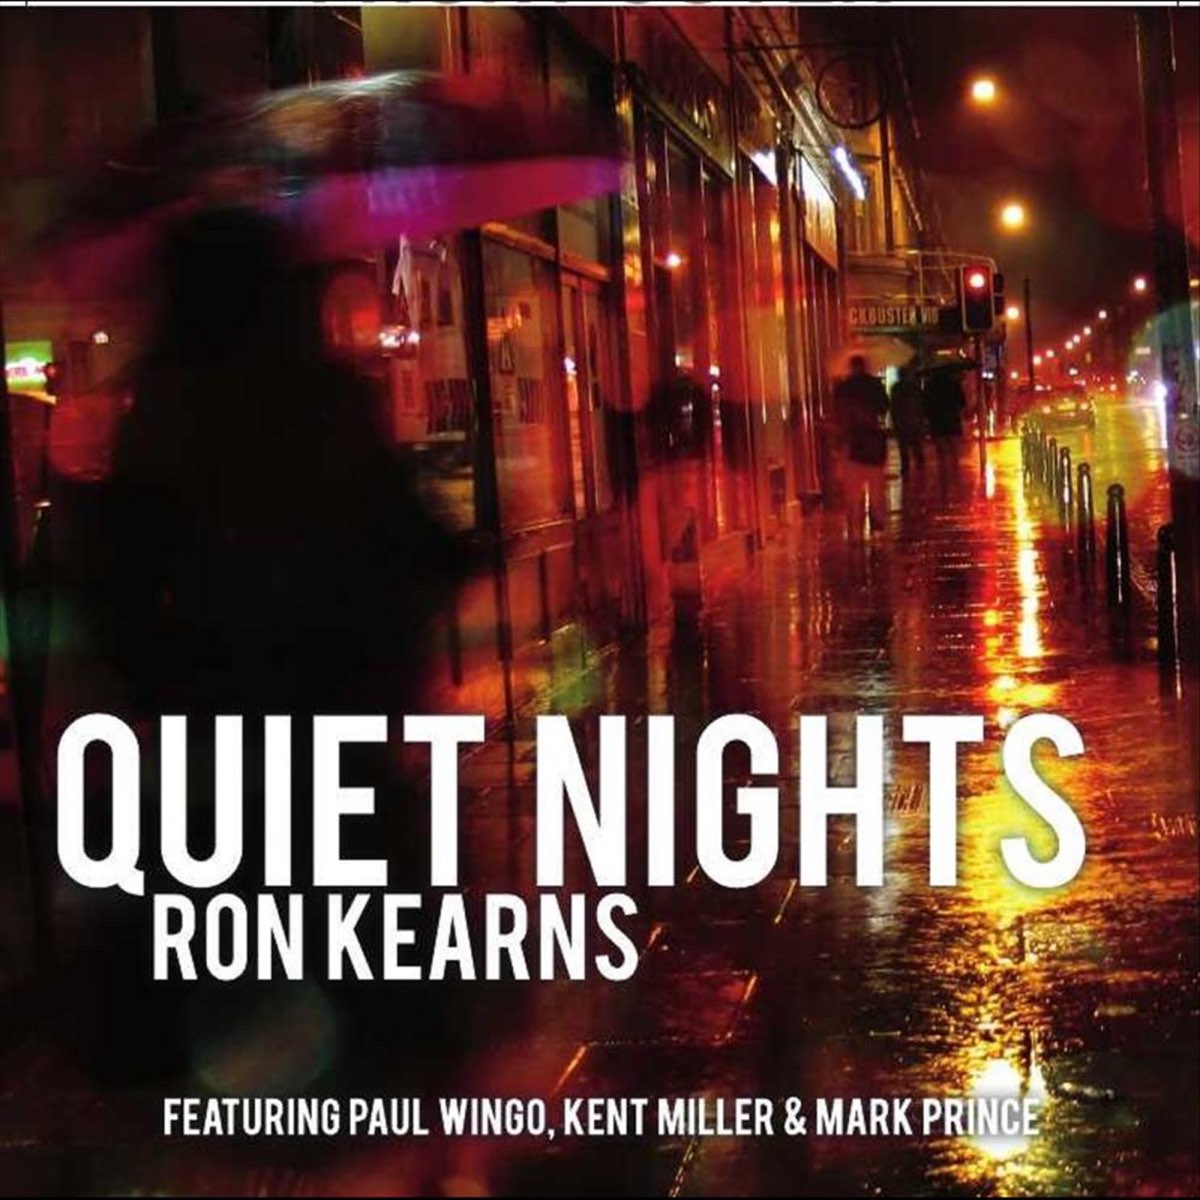 Kent Miller. Diana Krall quiet Nights. J. Kent Miller. Quite night